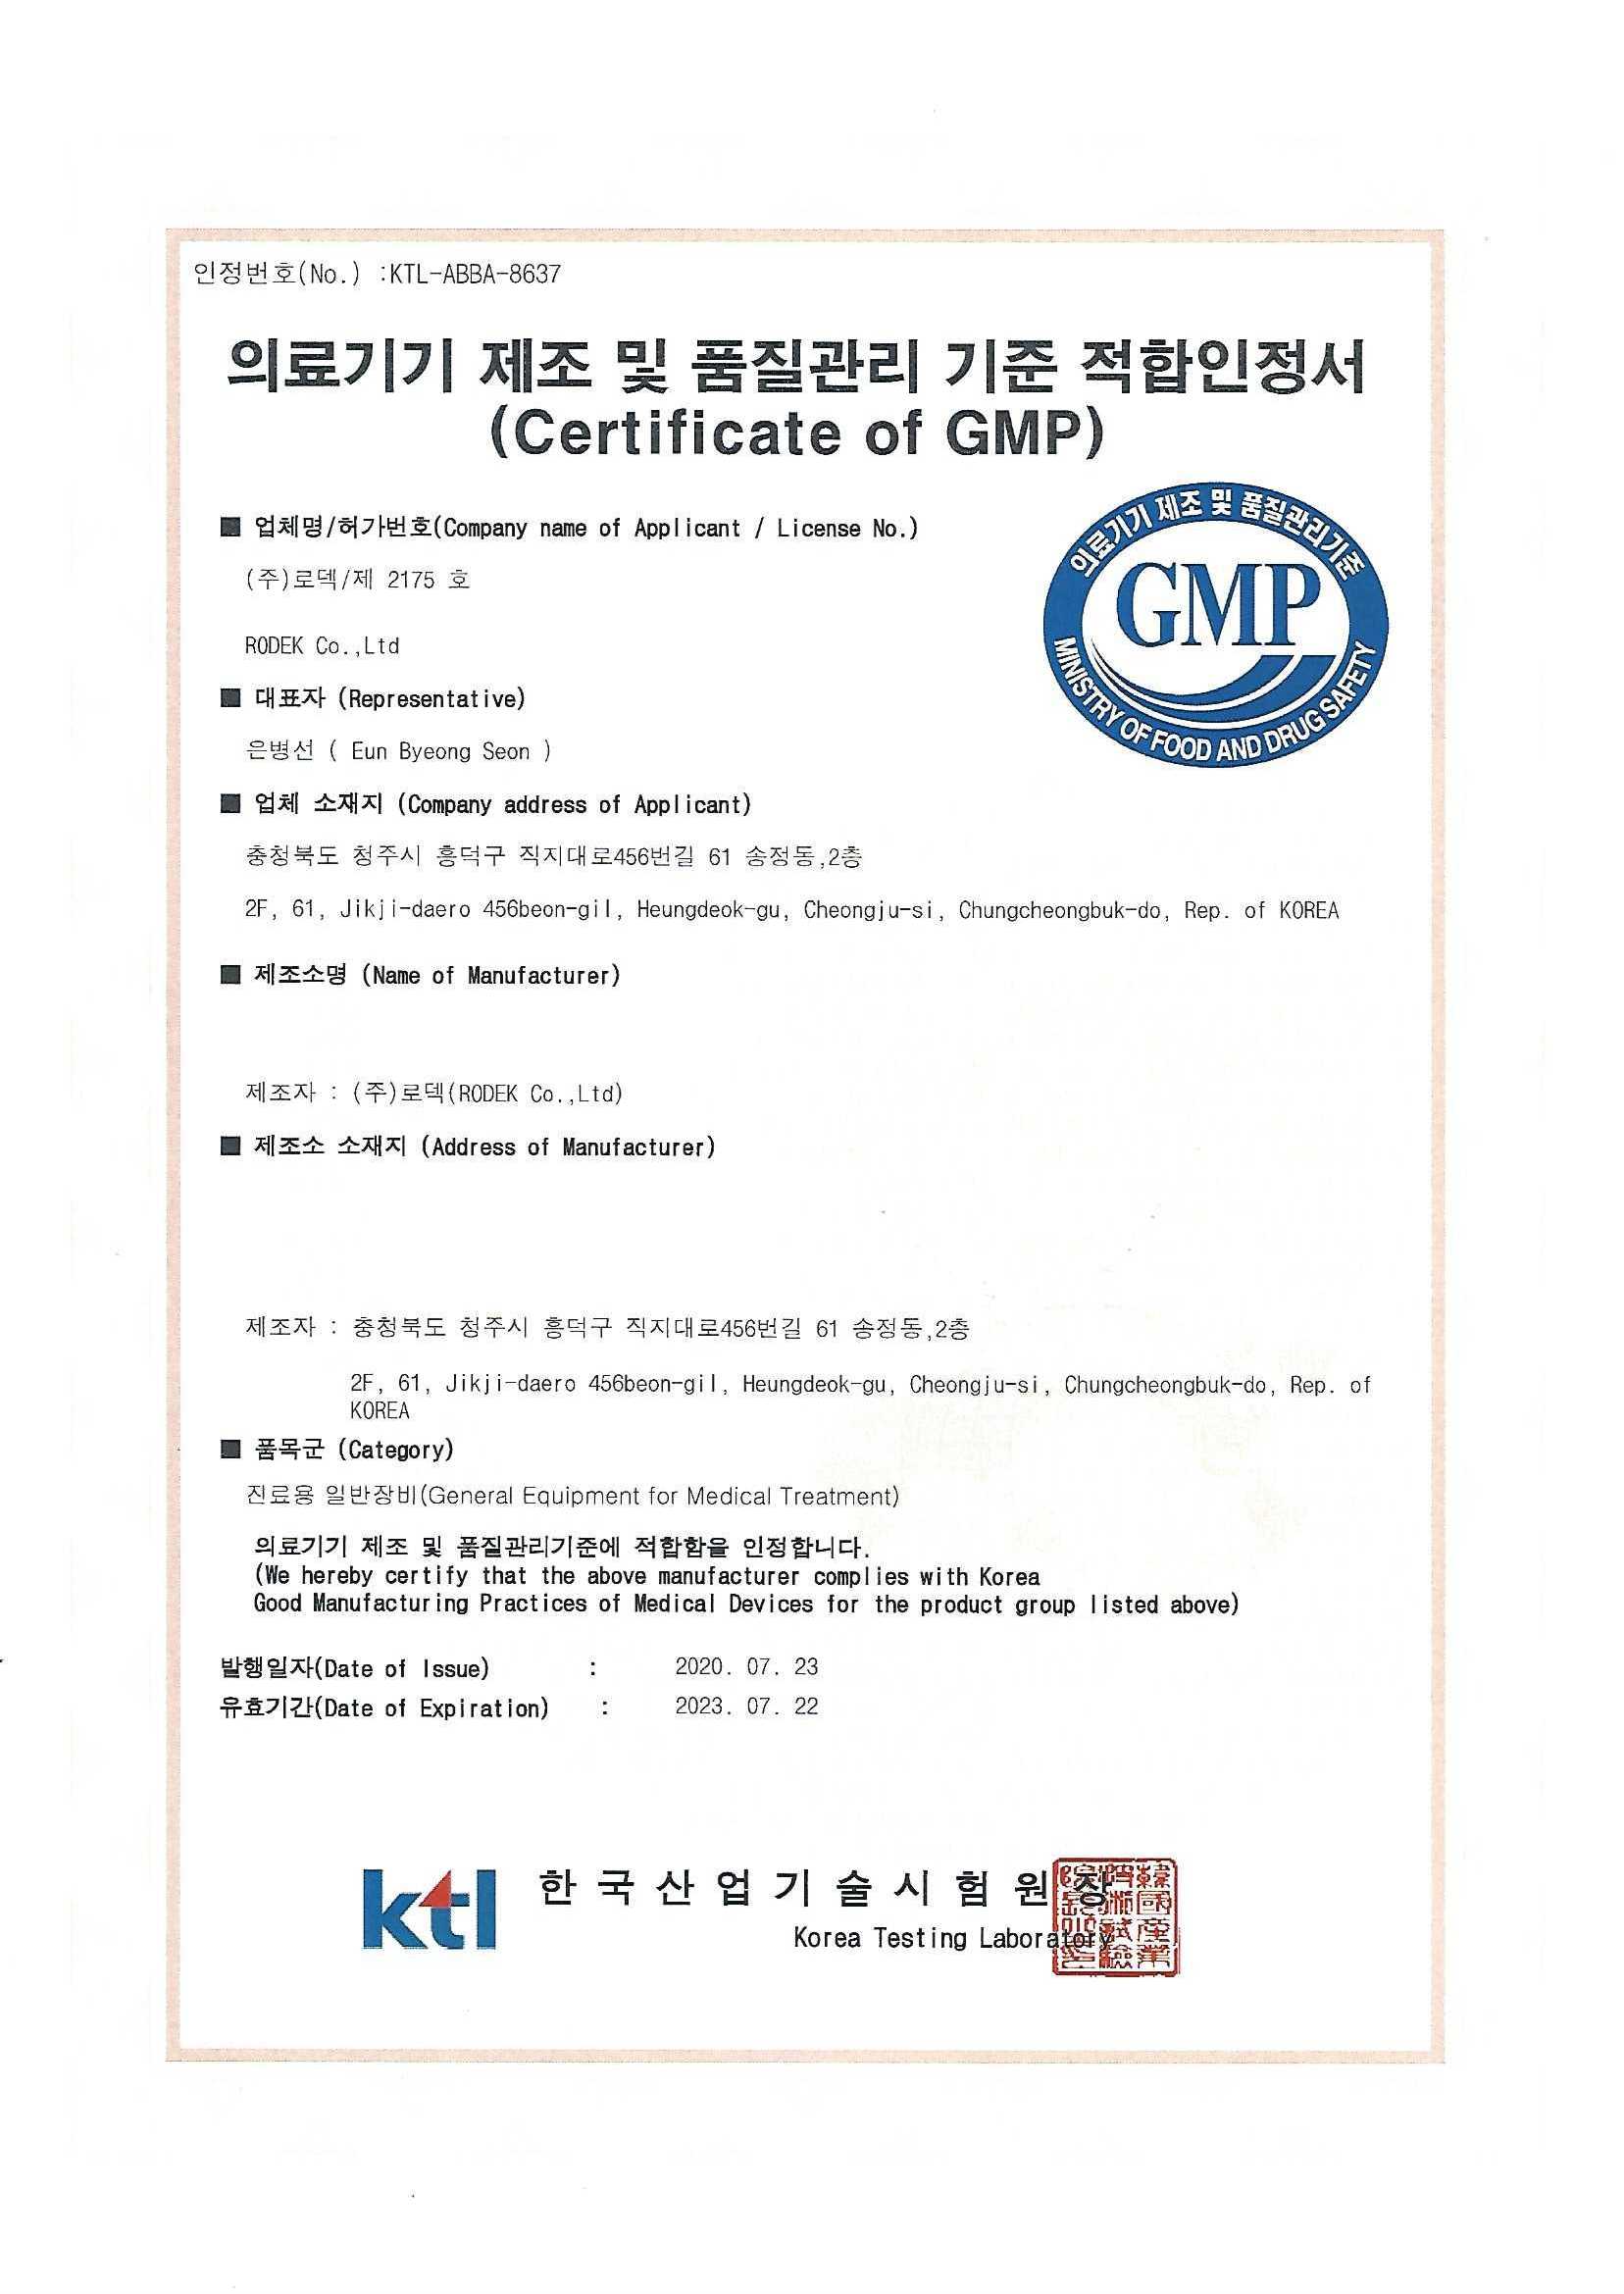 GMP 의료기기 제조 및 품질관리 기준 적합인정서